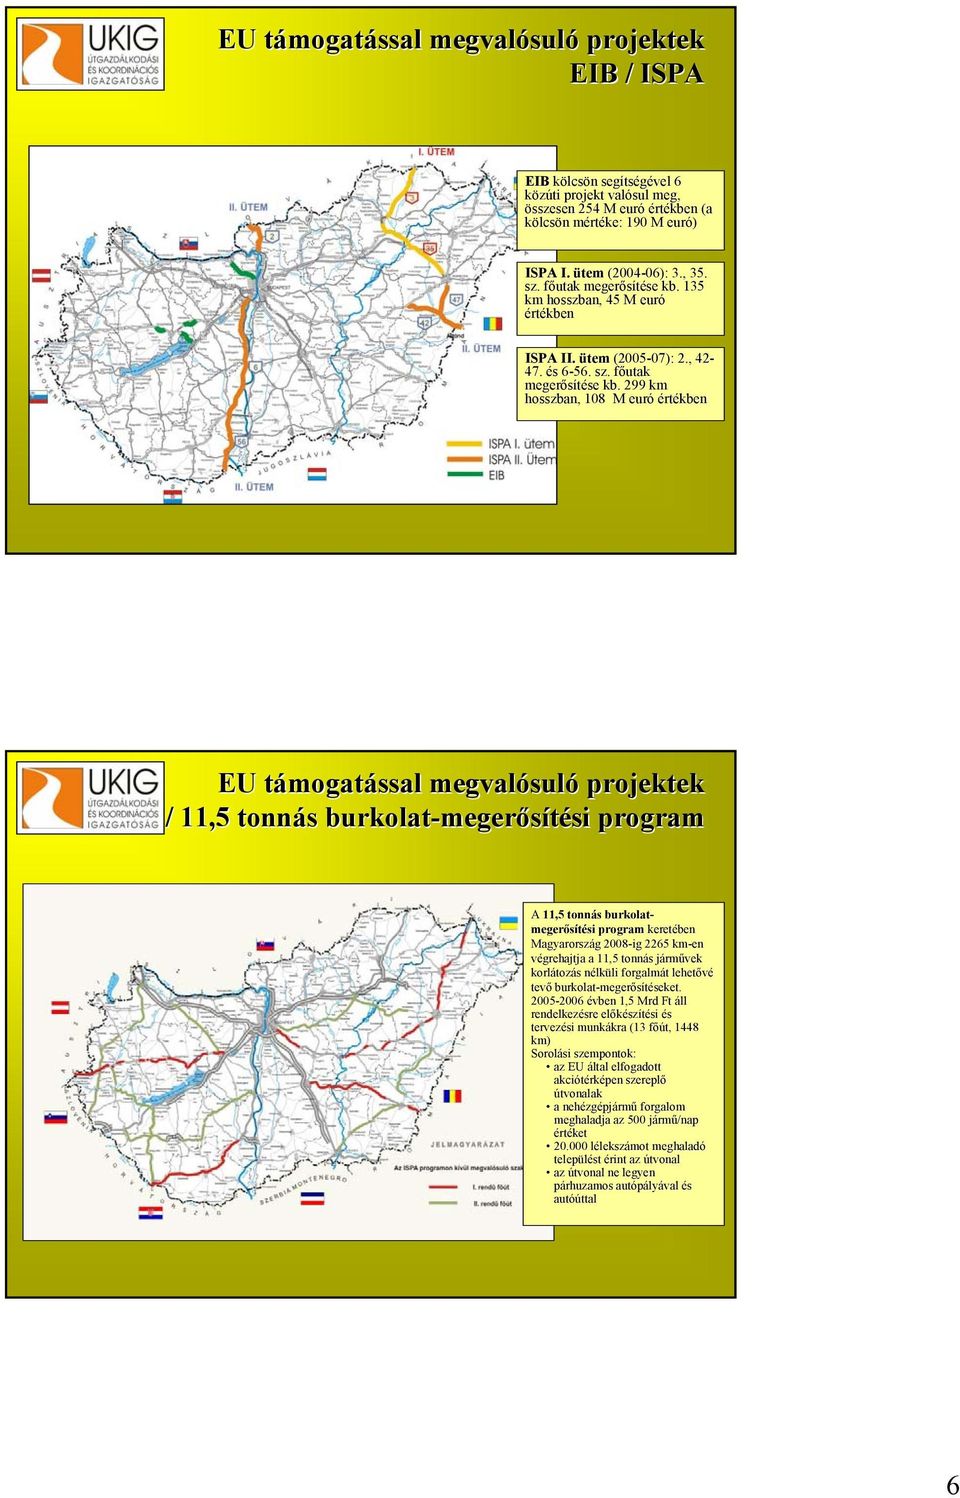 135 km hosszban, 45 M euró értékben ISPA II. ütem (2005-07): 07): 2., 42-47. és s 6-56. 6 sz. főutak f megerősítése se kb.